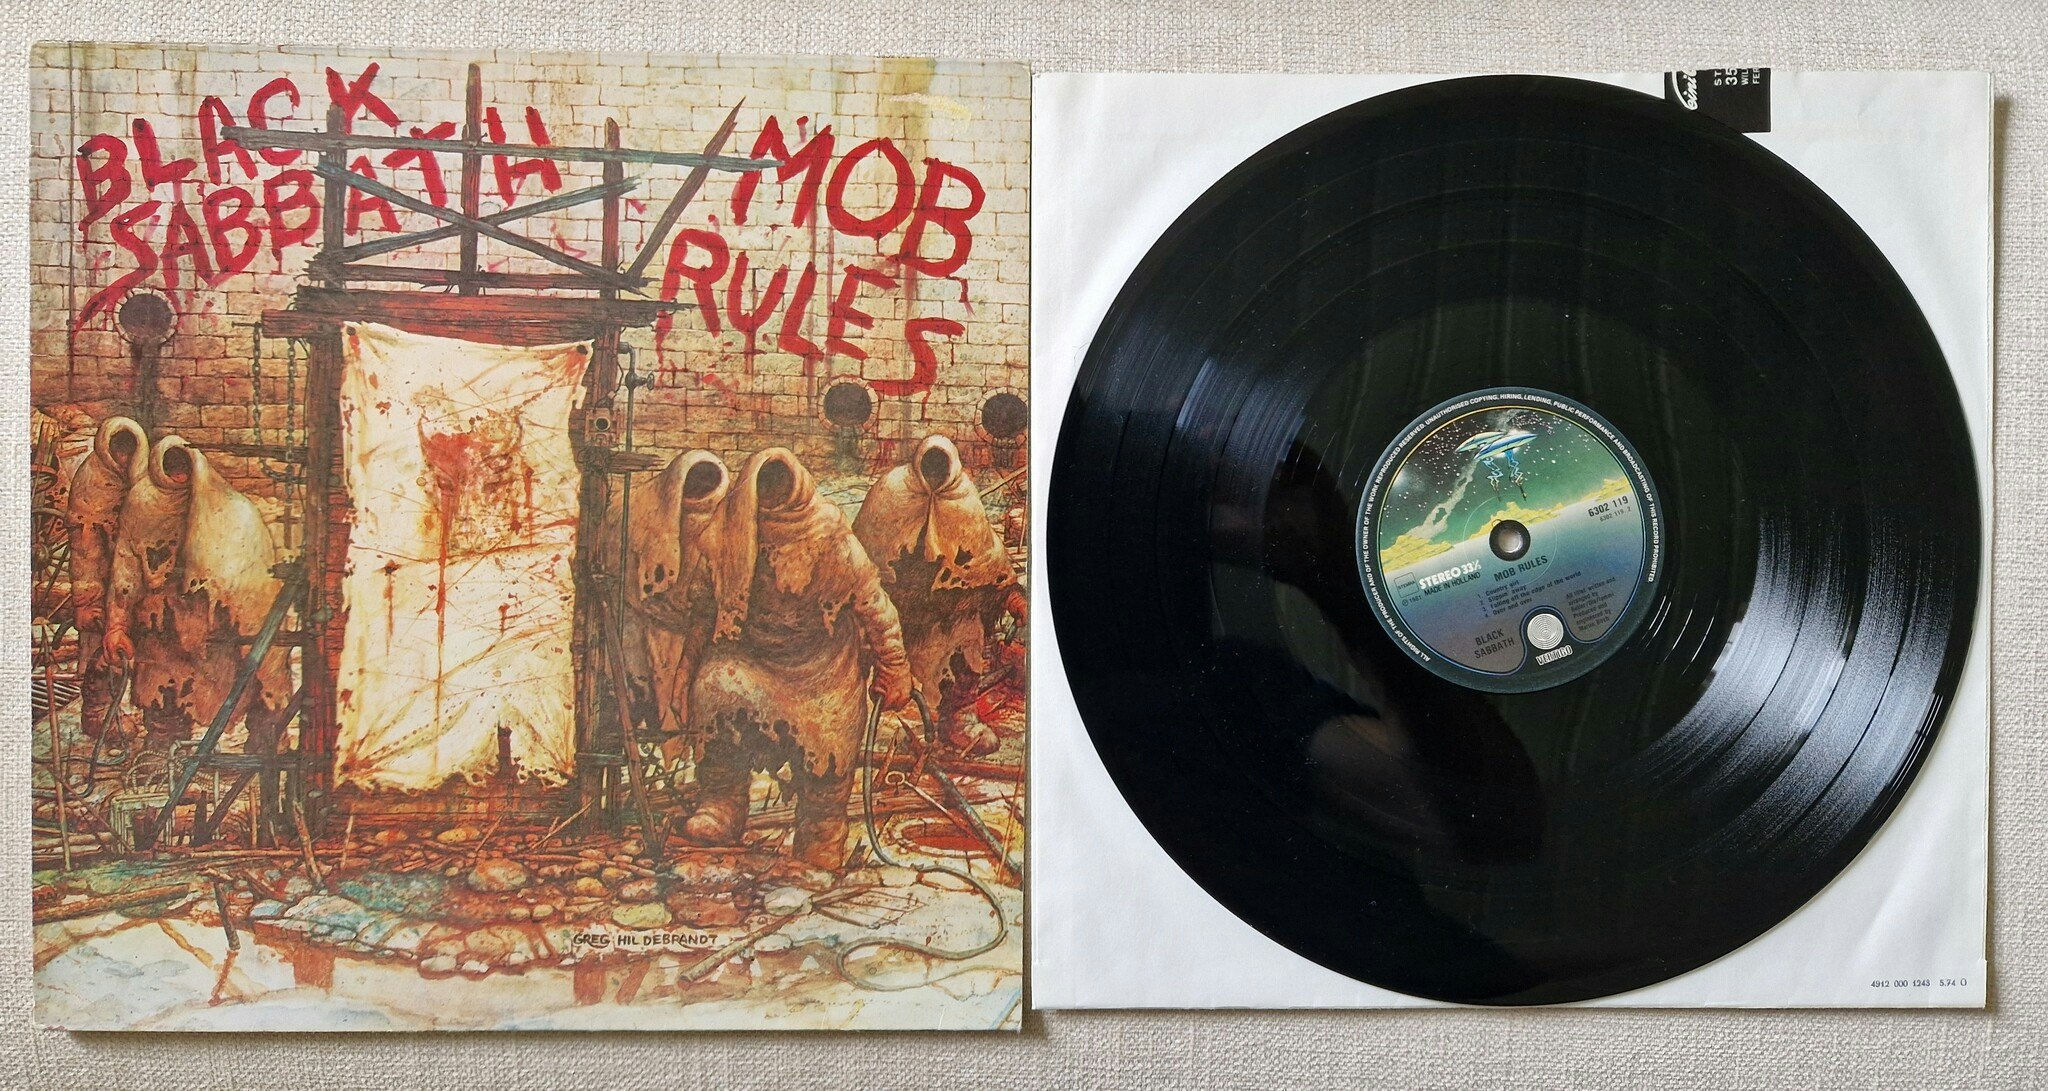 Black Sabbath, Mob rules. Vinyl LP